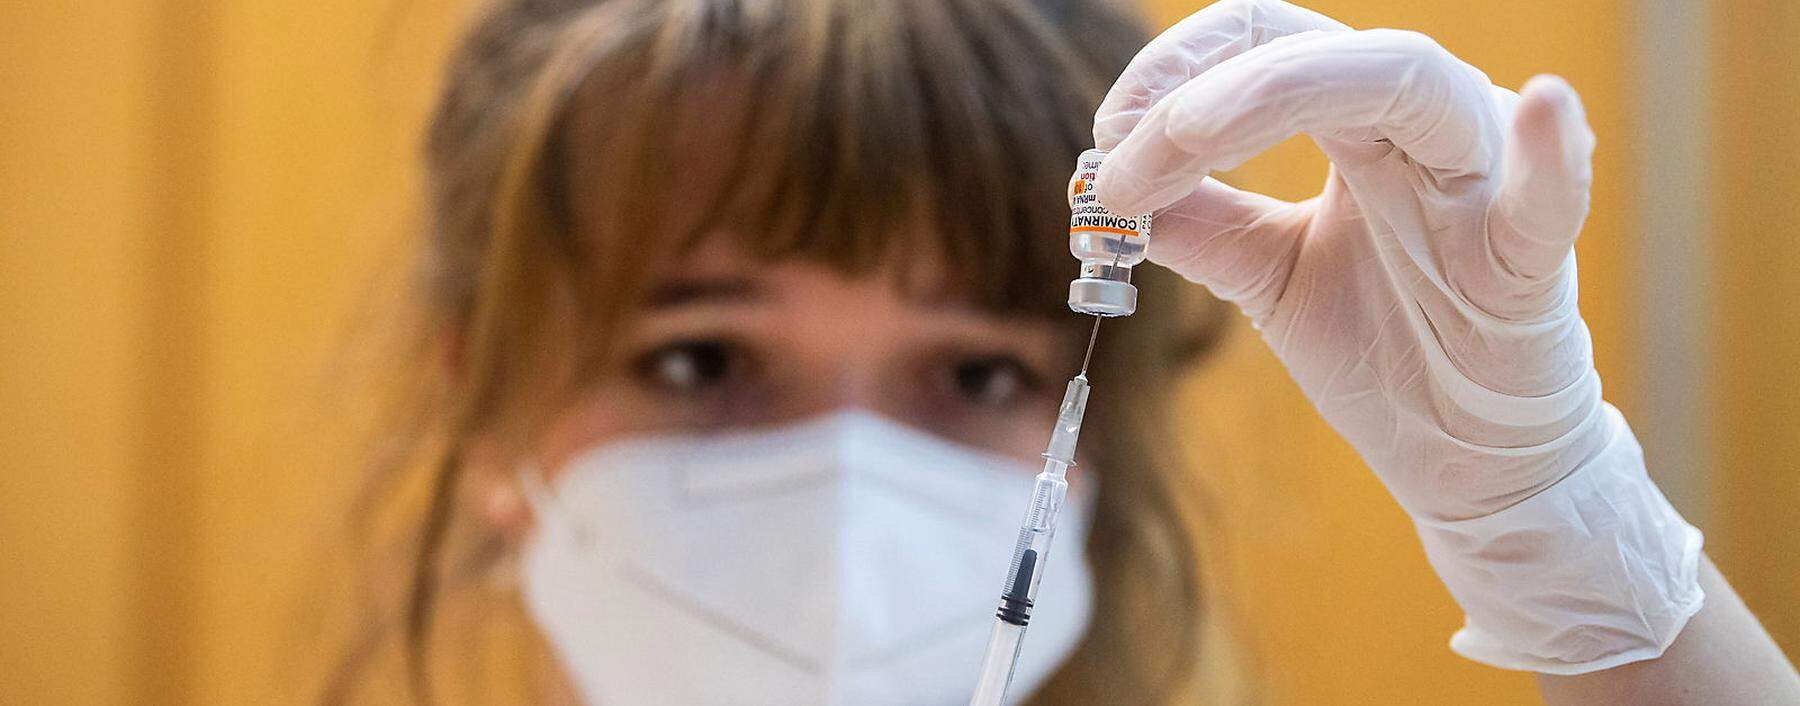 Children are vaccinated against COVID-19 in Ebersberg near Munich